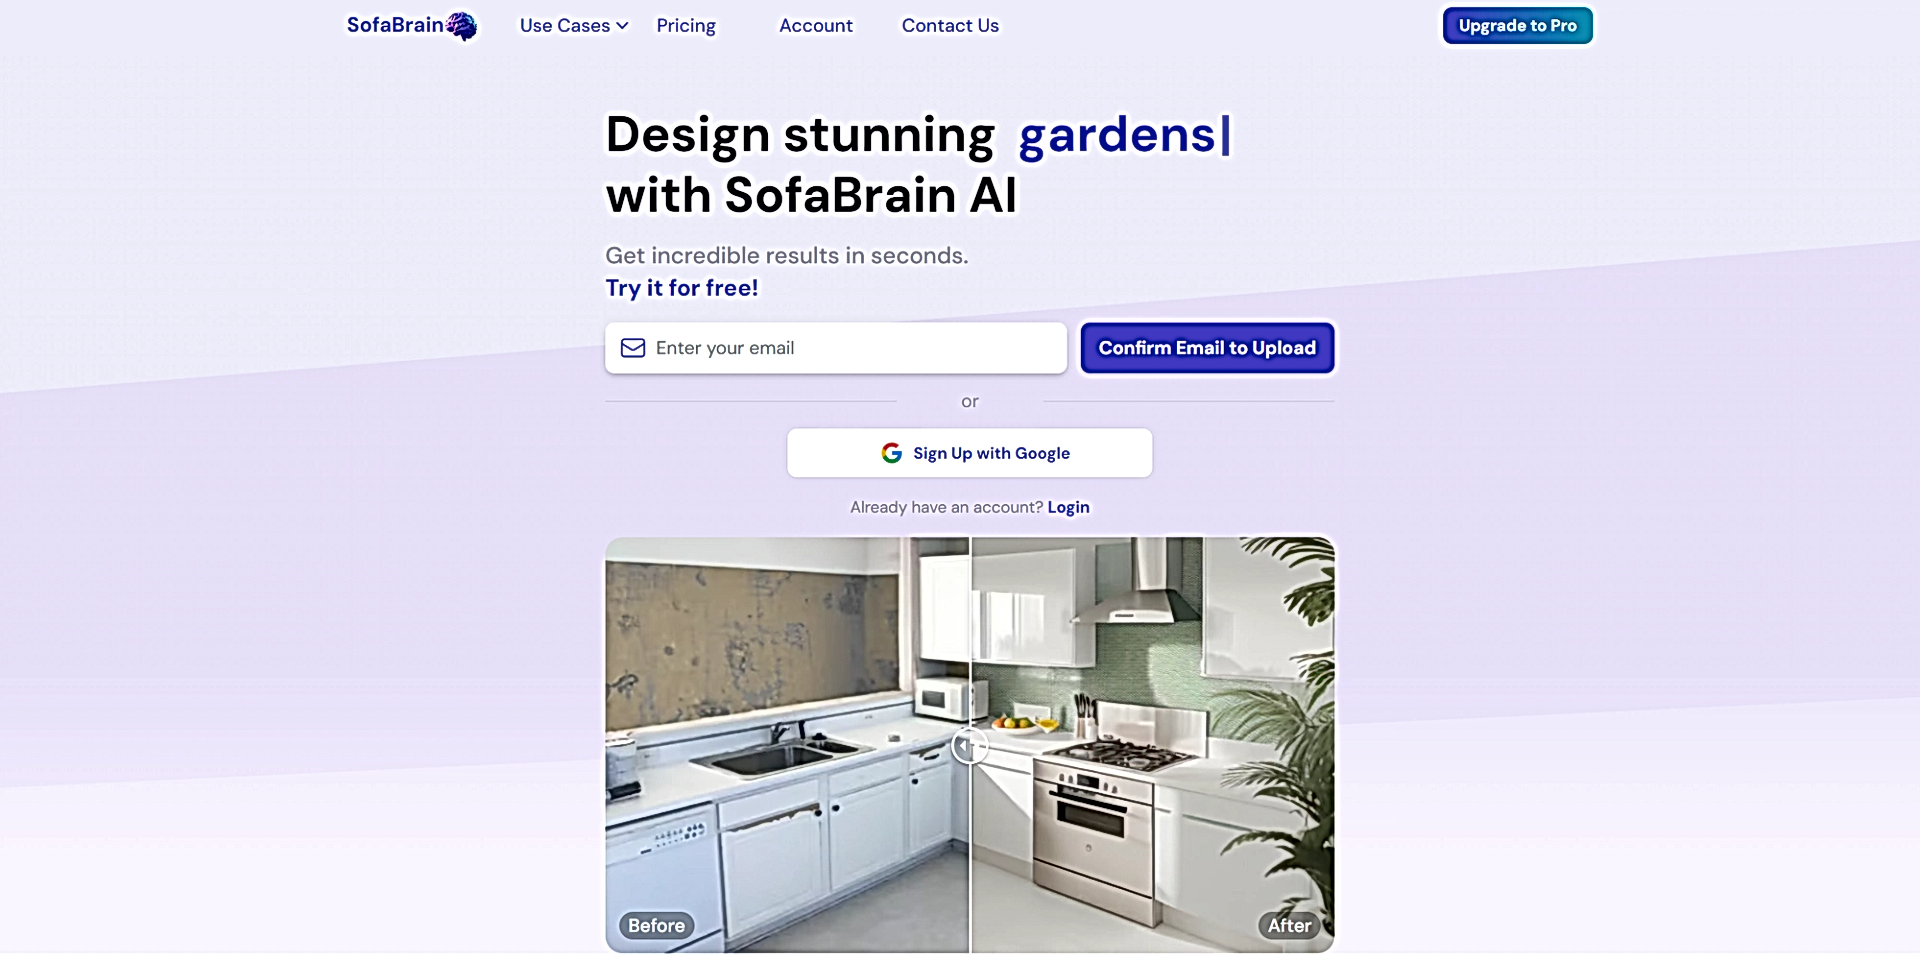 SofaBrain featured